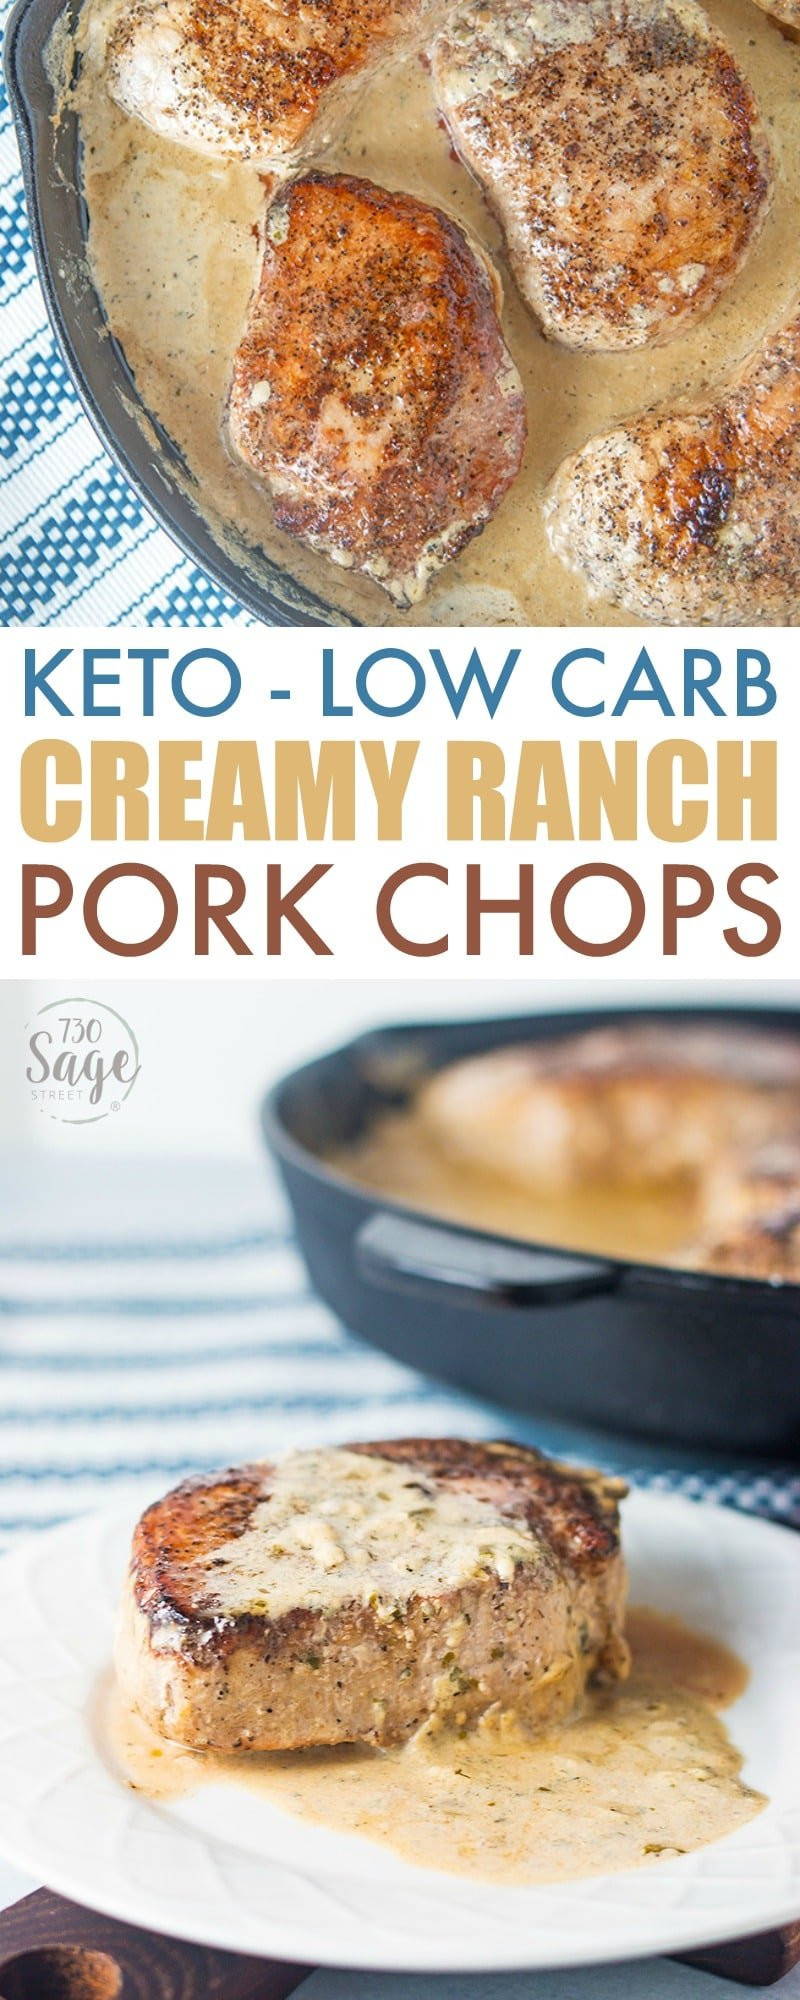 Low Carb Pork Chop Recipes
 Keto Pork Chops Recipe Creamy Ranch Pork Chops 730